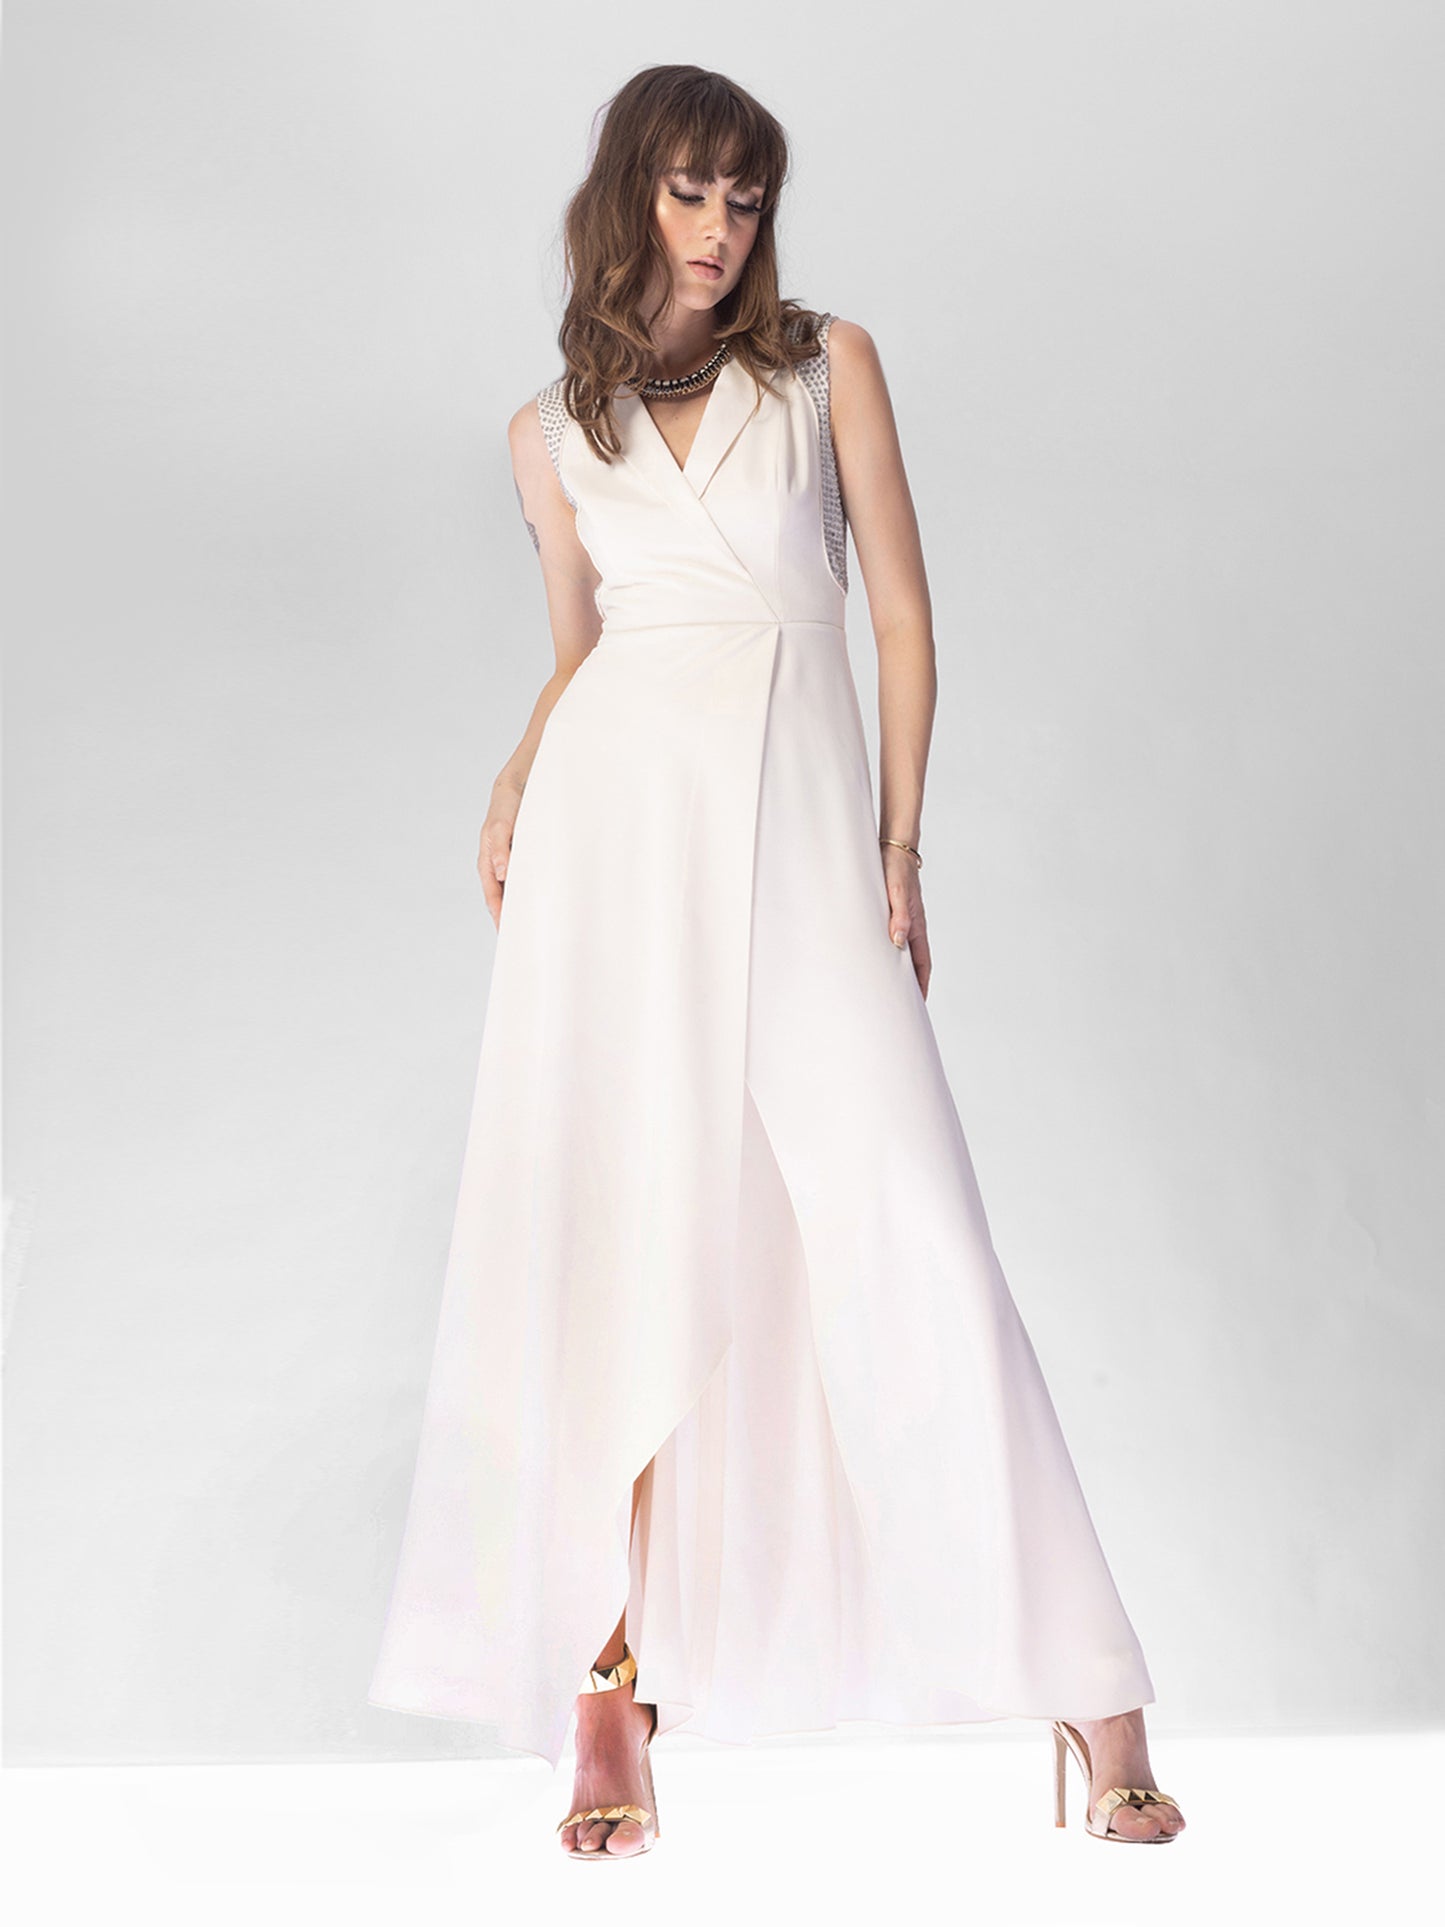 Omega White Overlap Dress